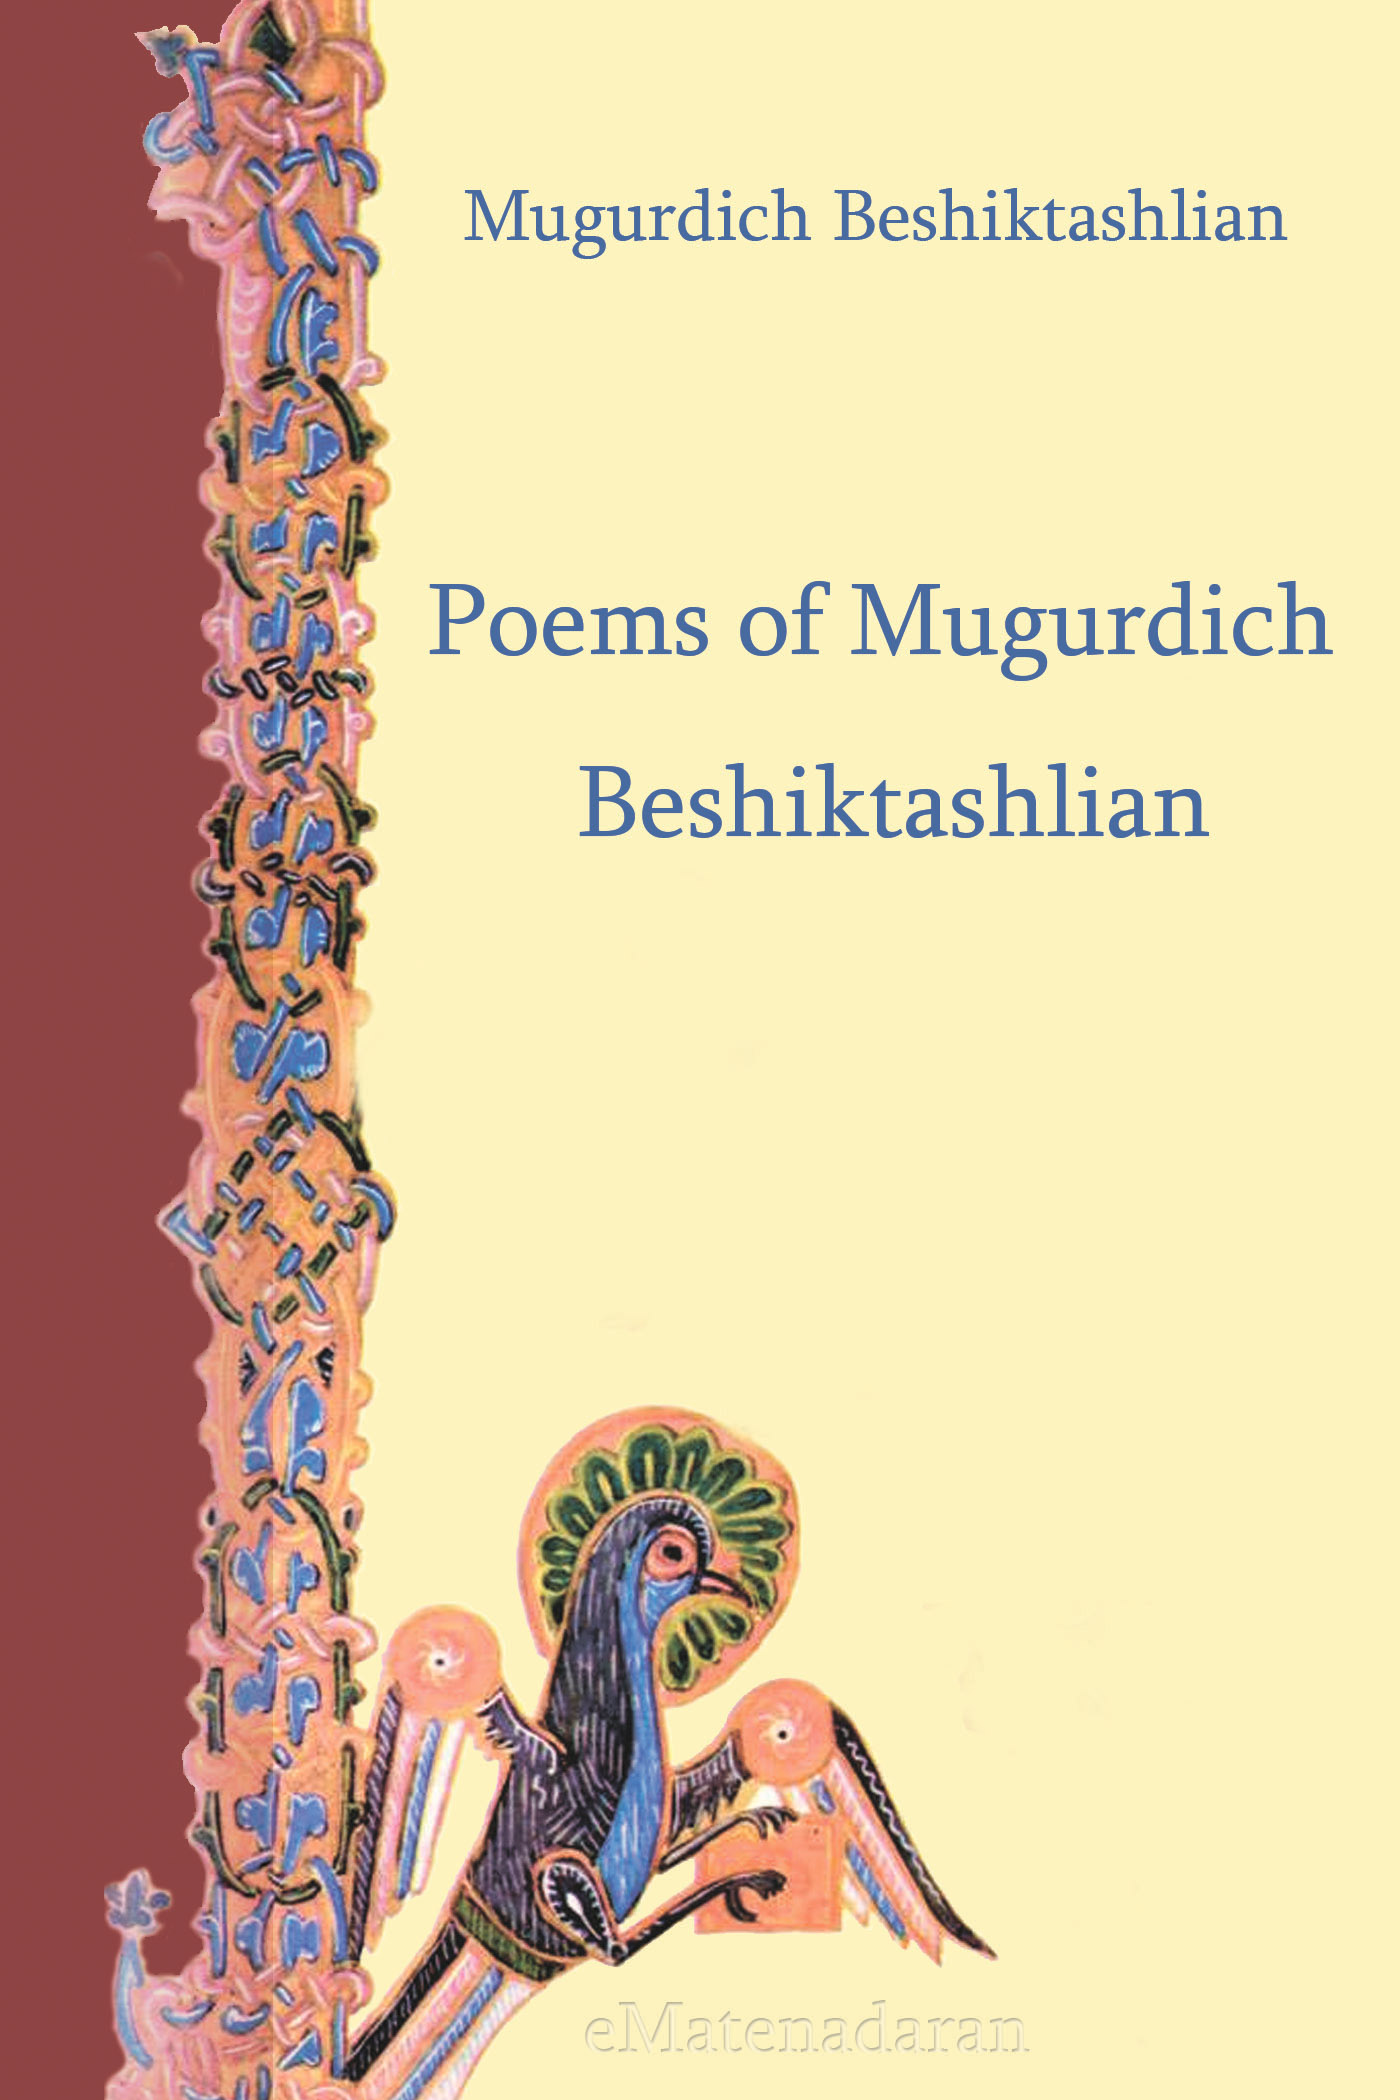 Книга Poems of Mugurdich Beshiktashlian из серии , созданная Beshiktashlian Mugurdich, может относится к жанру Иностранные языки, Поэзия, Зарубежная классика. Стоимость электронной книги Poems of Mugurdich Beshiktashlian с идентификатором 24429822 составляет 0.90 руб.